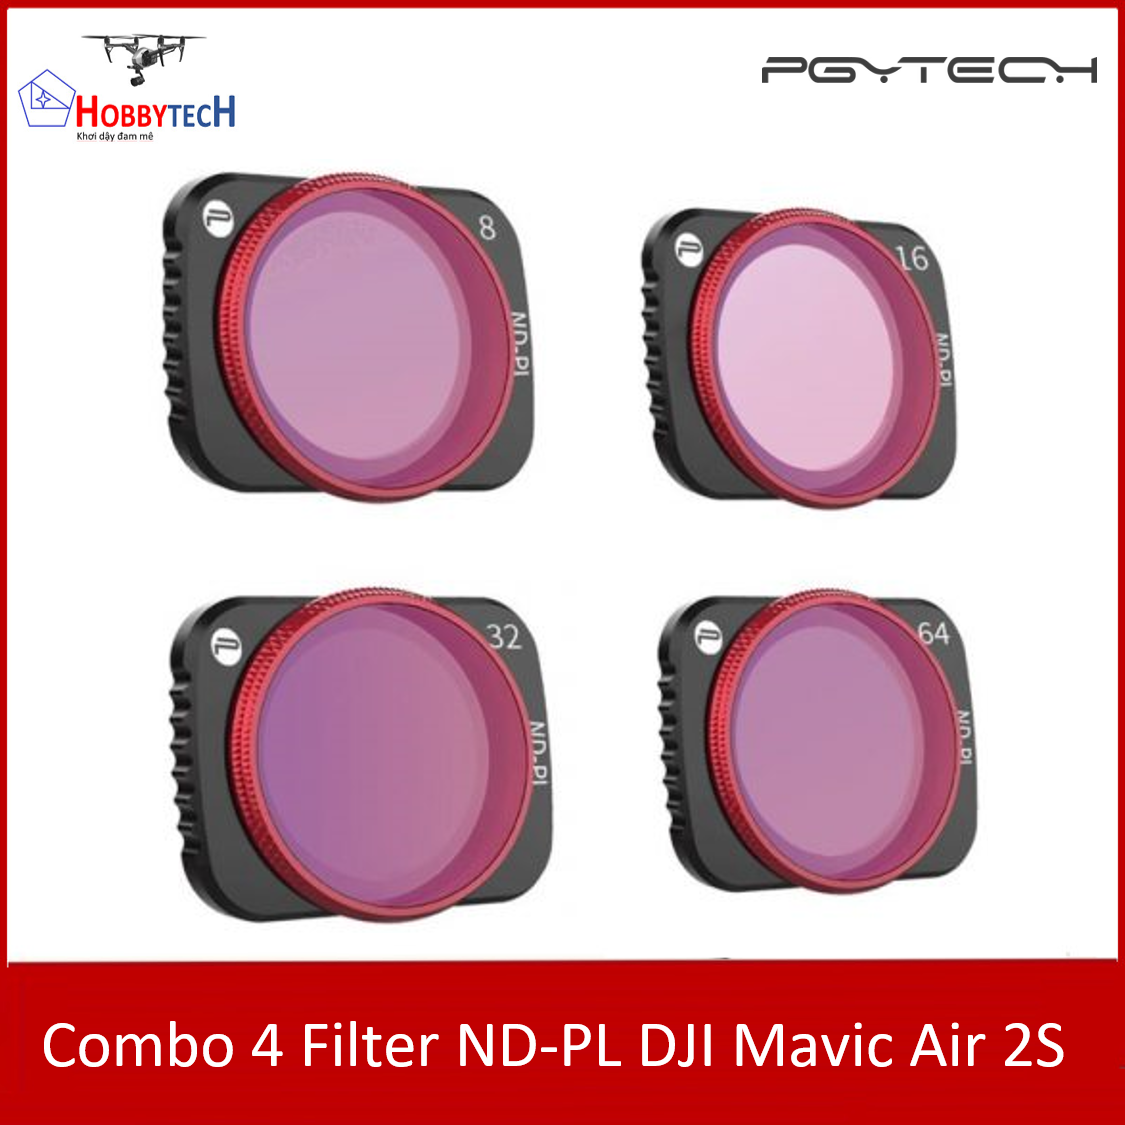 Combo 4 Filter ND-PL DJI Mavic Air 2S – PGYtech